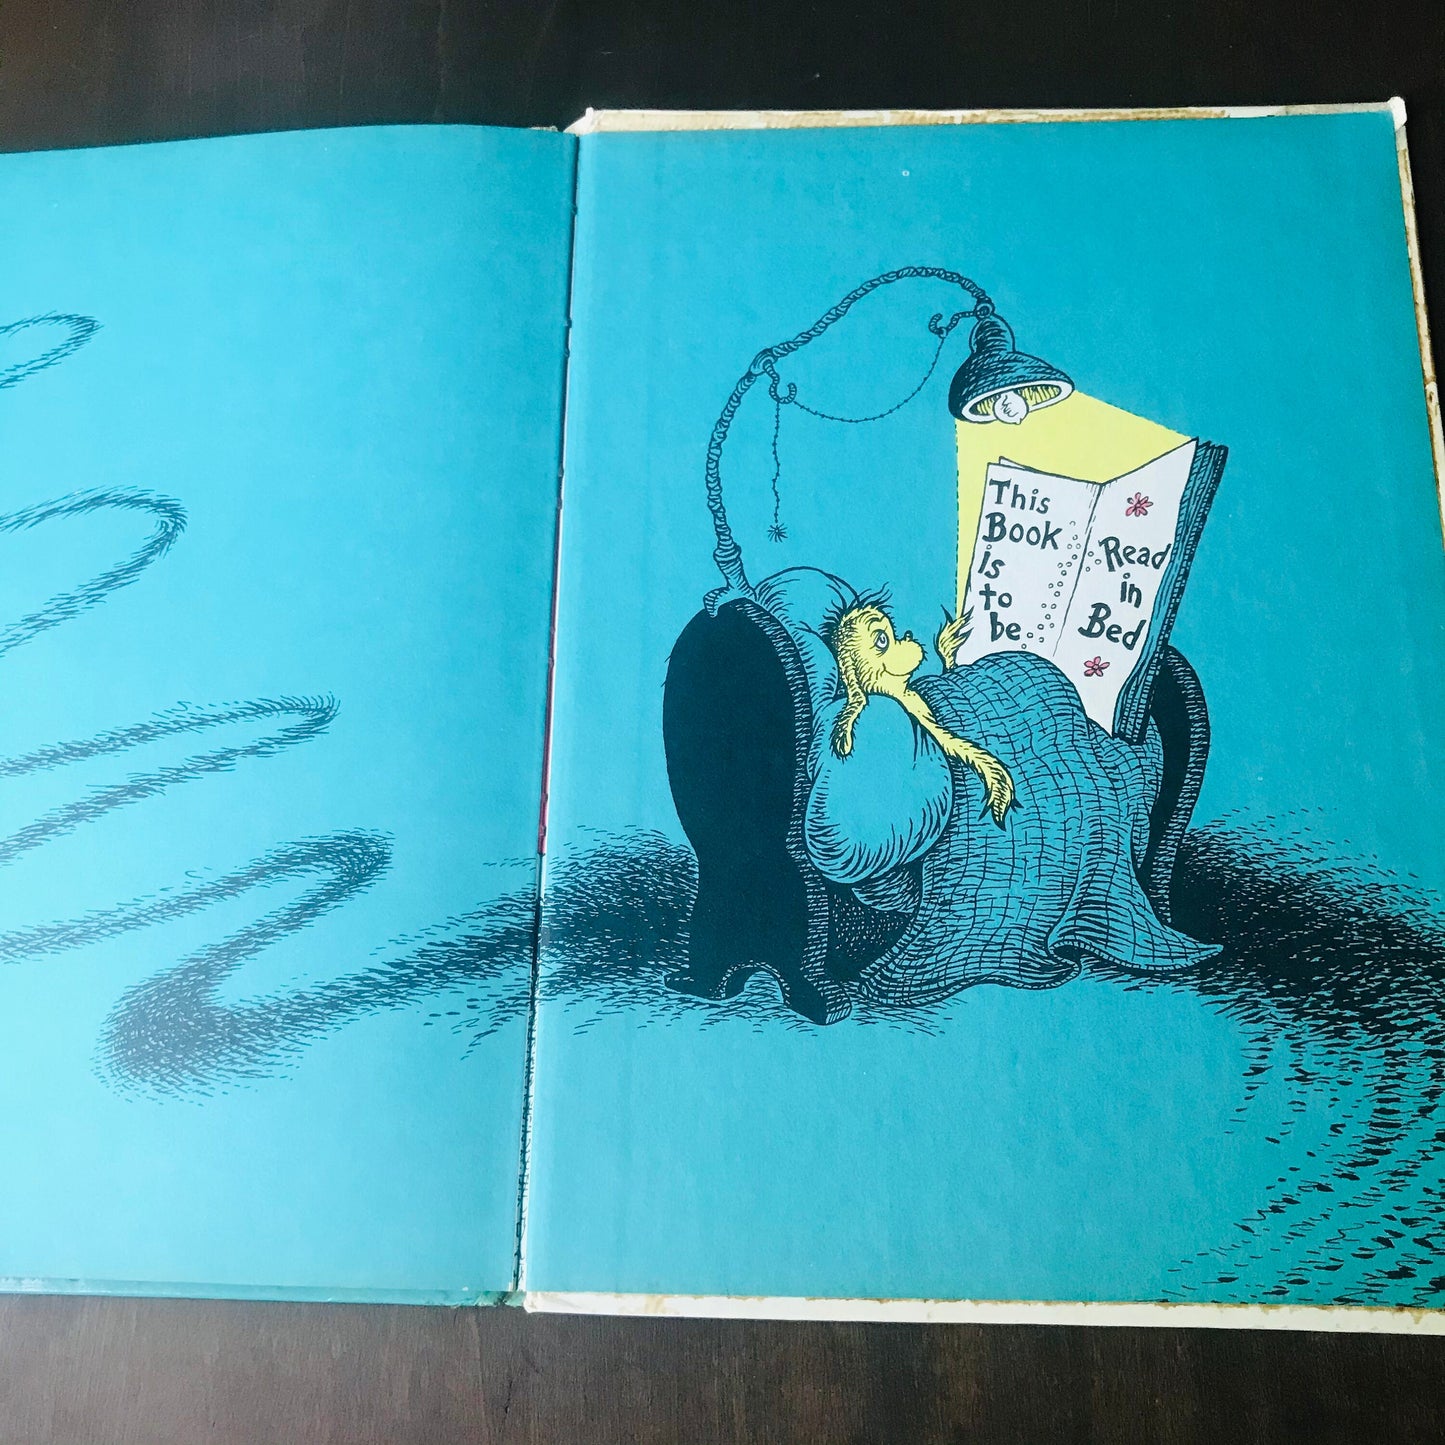 Dr Seuss's Sleep Book By Dr Seuss 1962